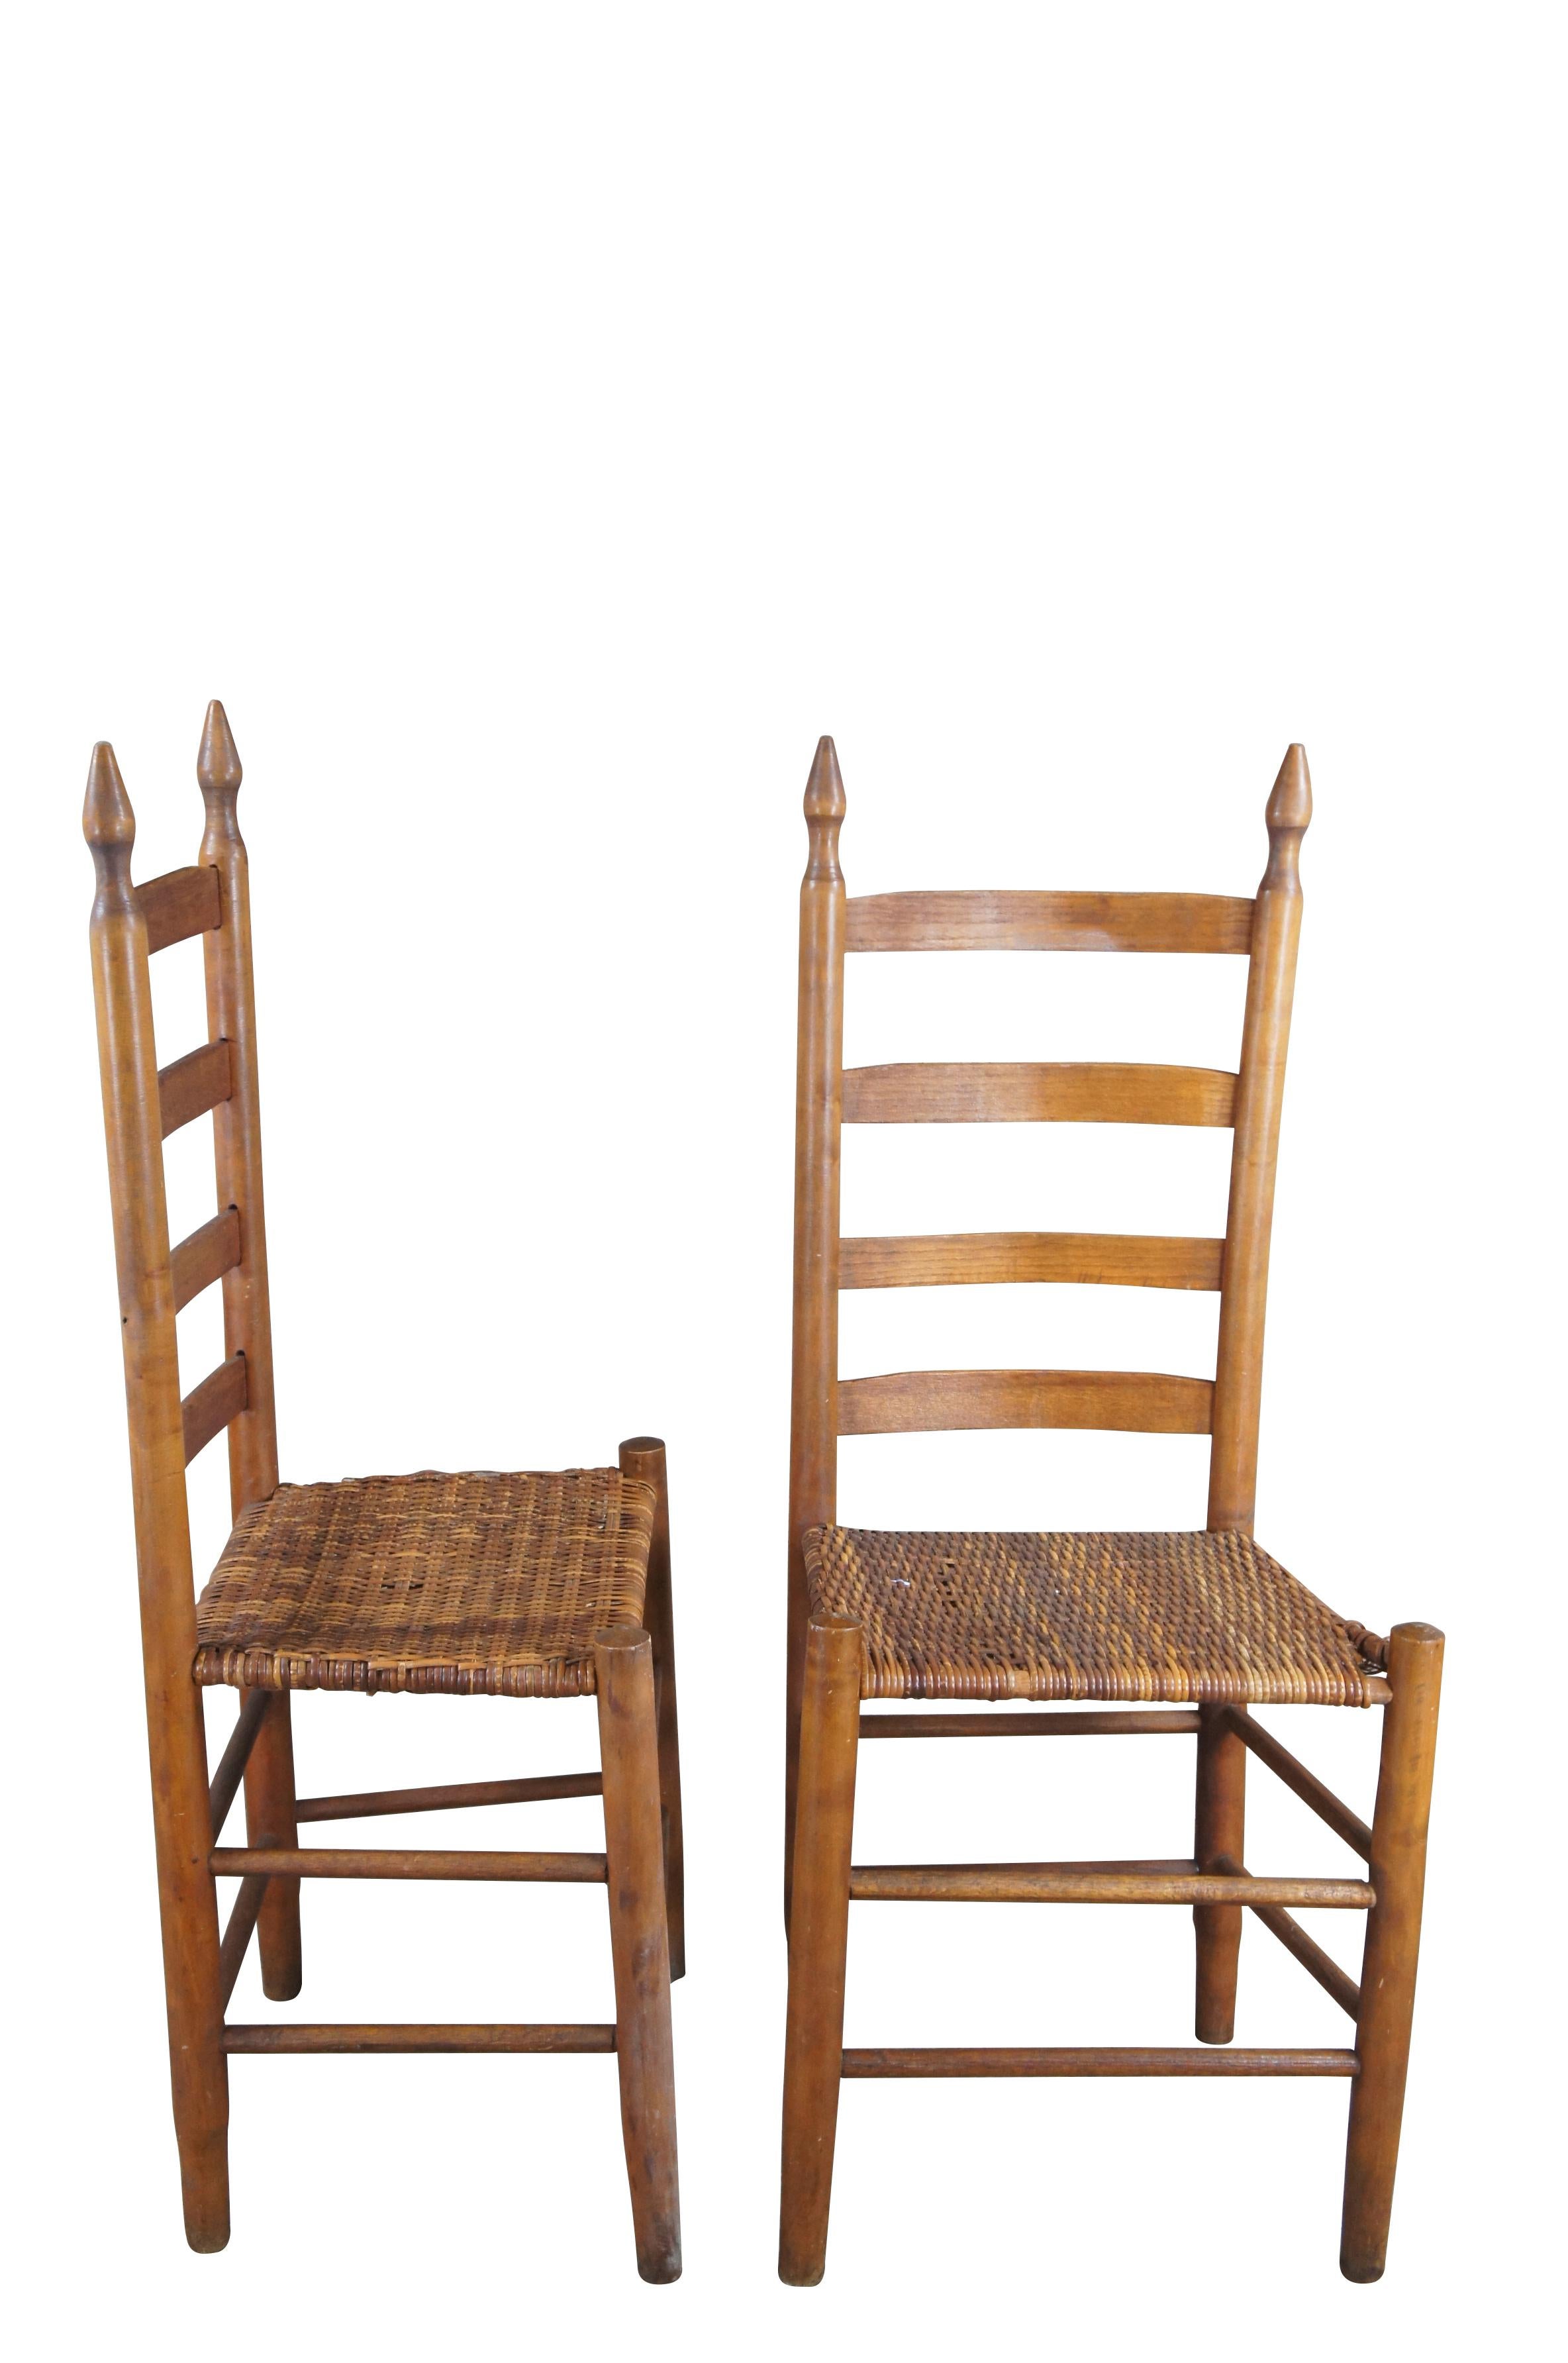 4 amerikanische Shaker-Esszimmerstühle mit Leiterrücken und Sitzen aus Rattan/Geflecht.  Wunderschönes Design mit einzigartigen kegelförmigen Endstücken.  

Abmessungen:
19,5